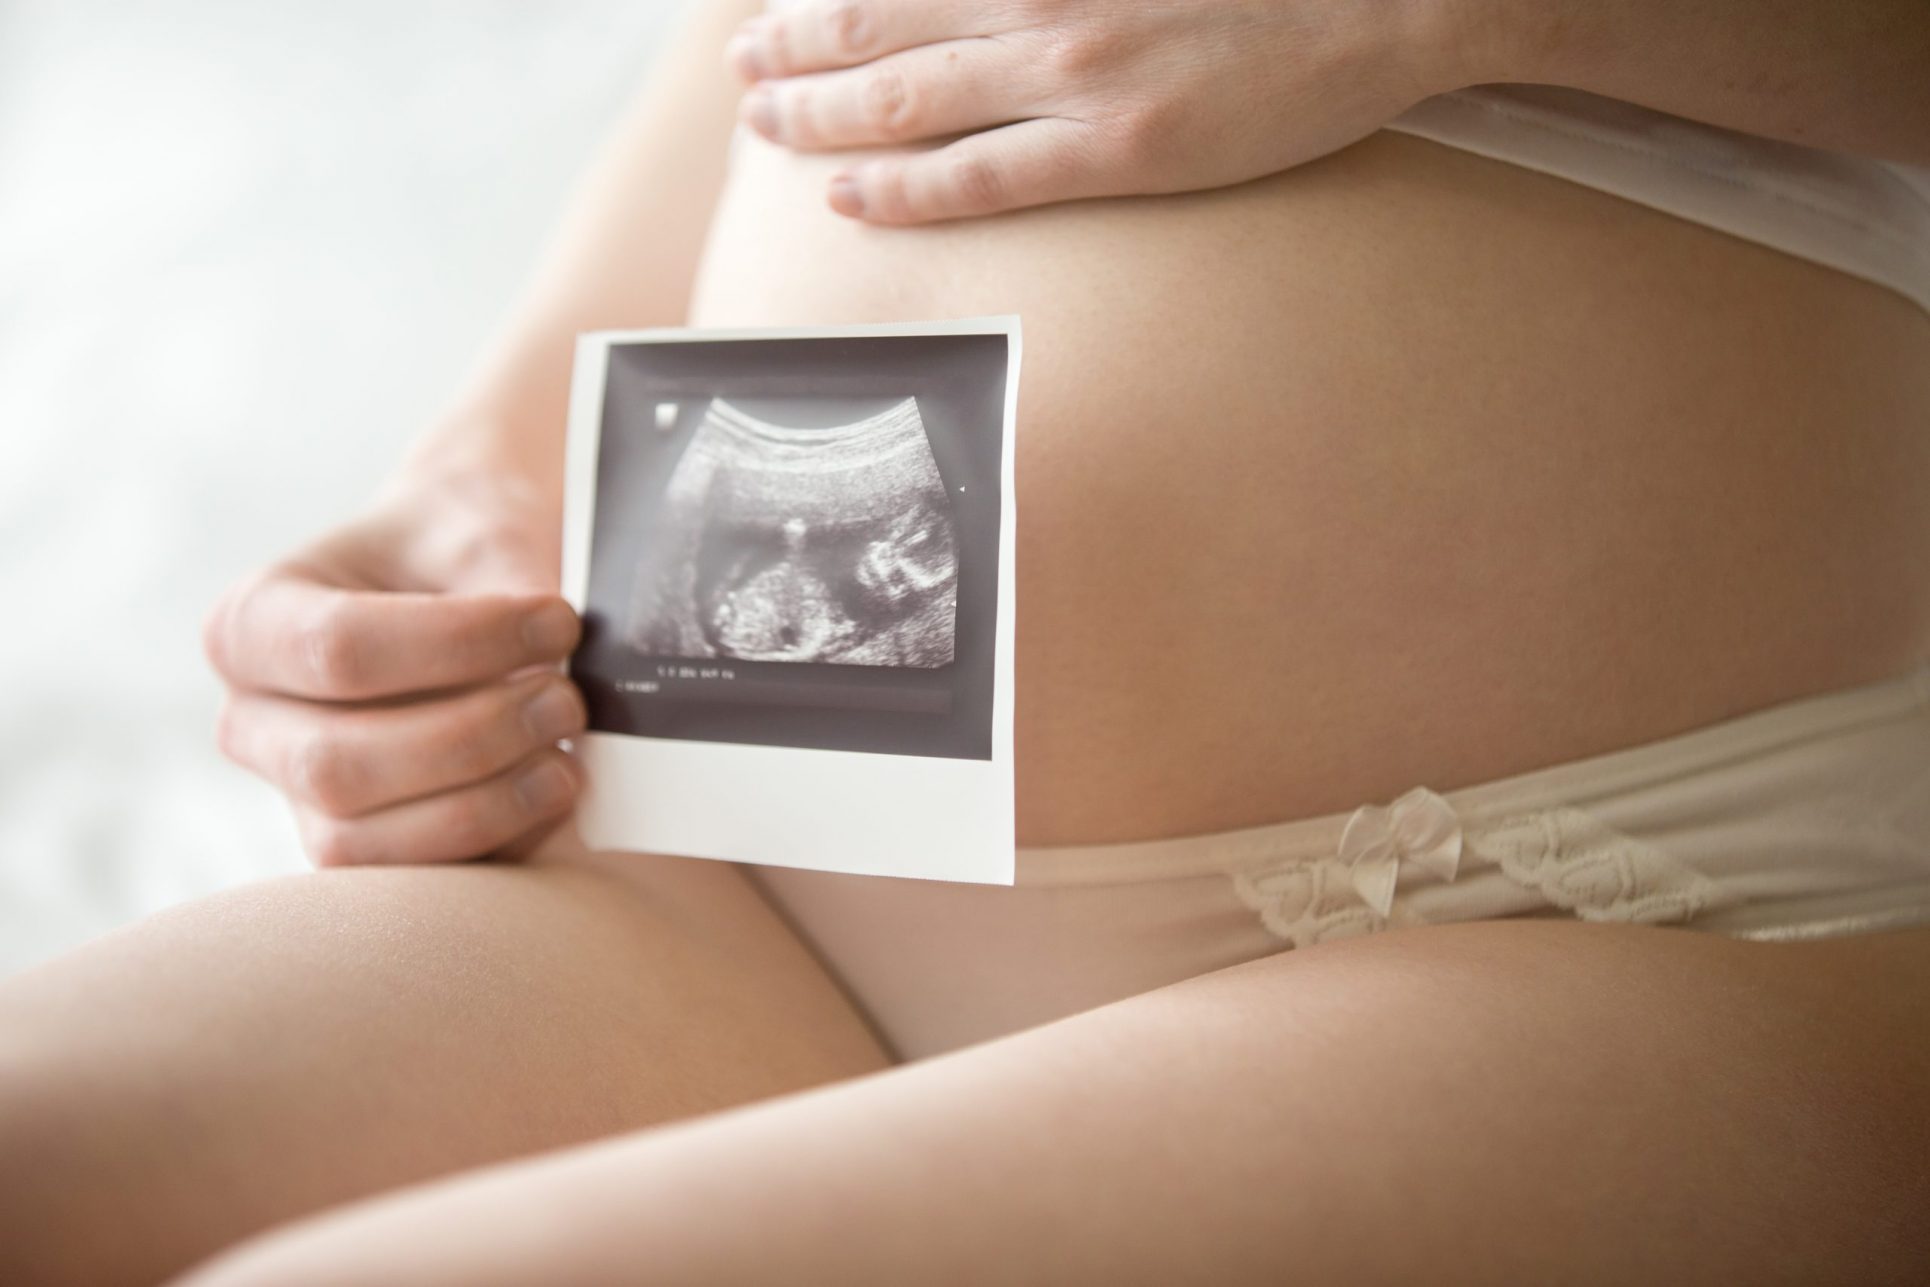 Costa Rica registra una reducción de los embarazos de adolescentes